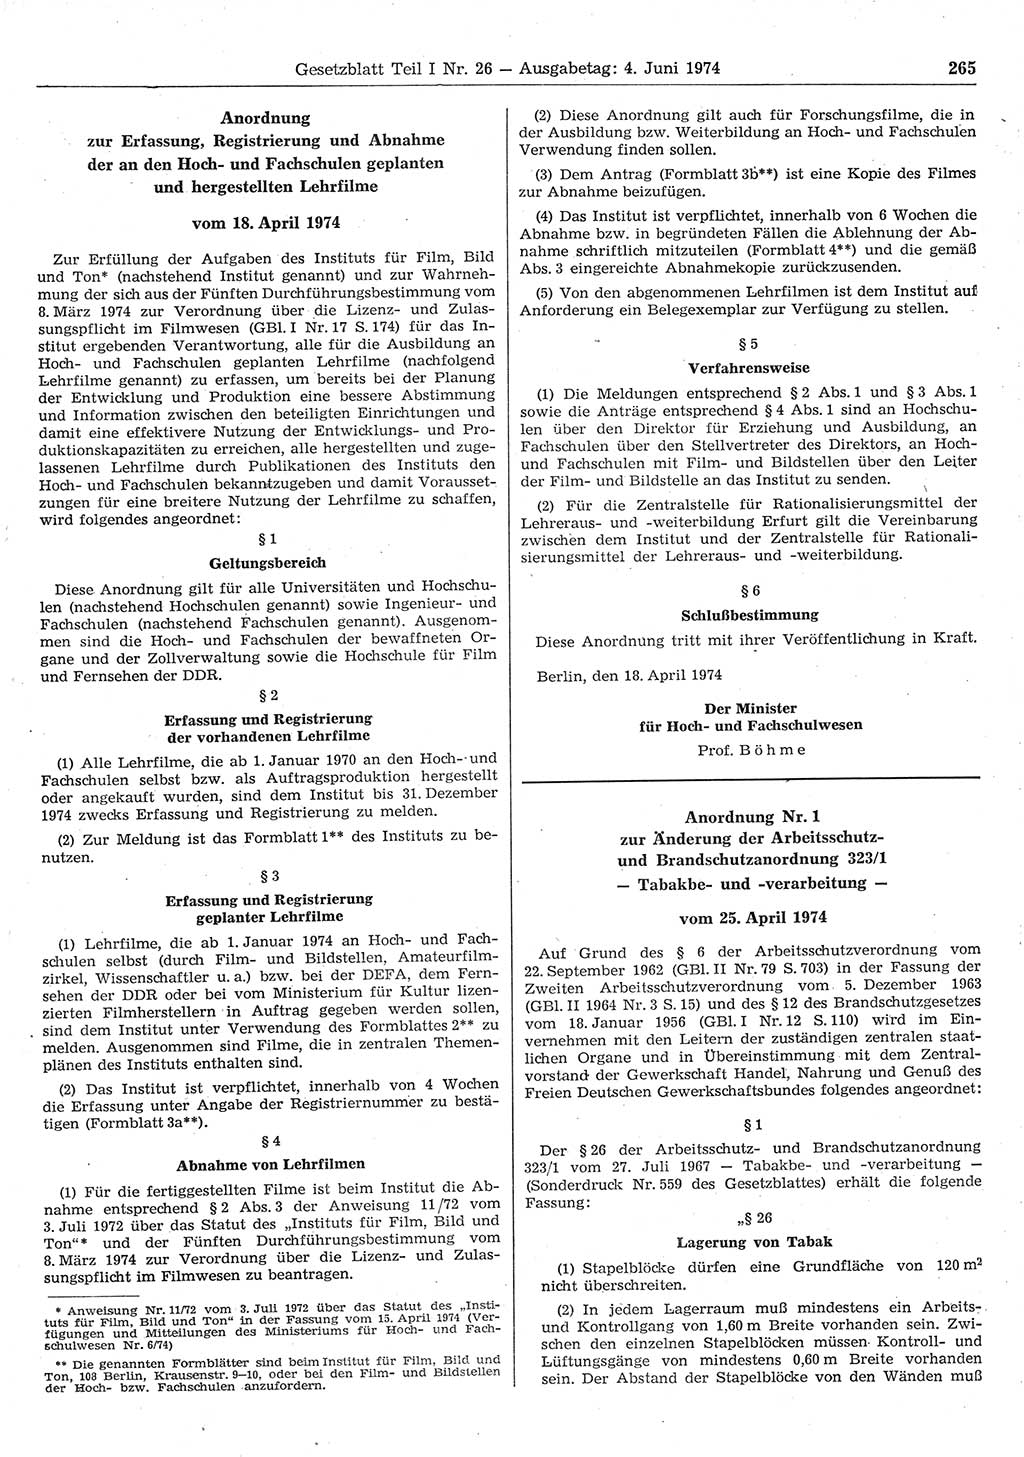 Gesetzblatt (GBl.) der Deutschen Demokratischen Republik (DDR) Teil Ⅰ 1974, Seite 265 (GBl. DDR Ⅰ 1974, S. 265)